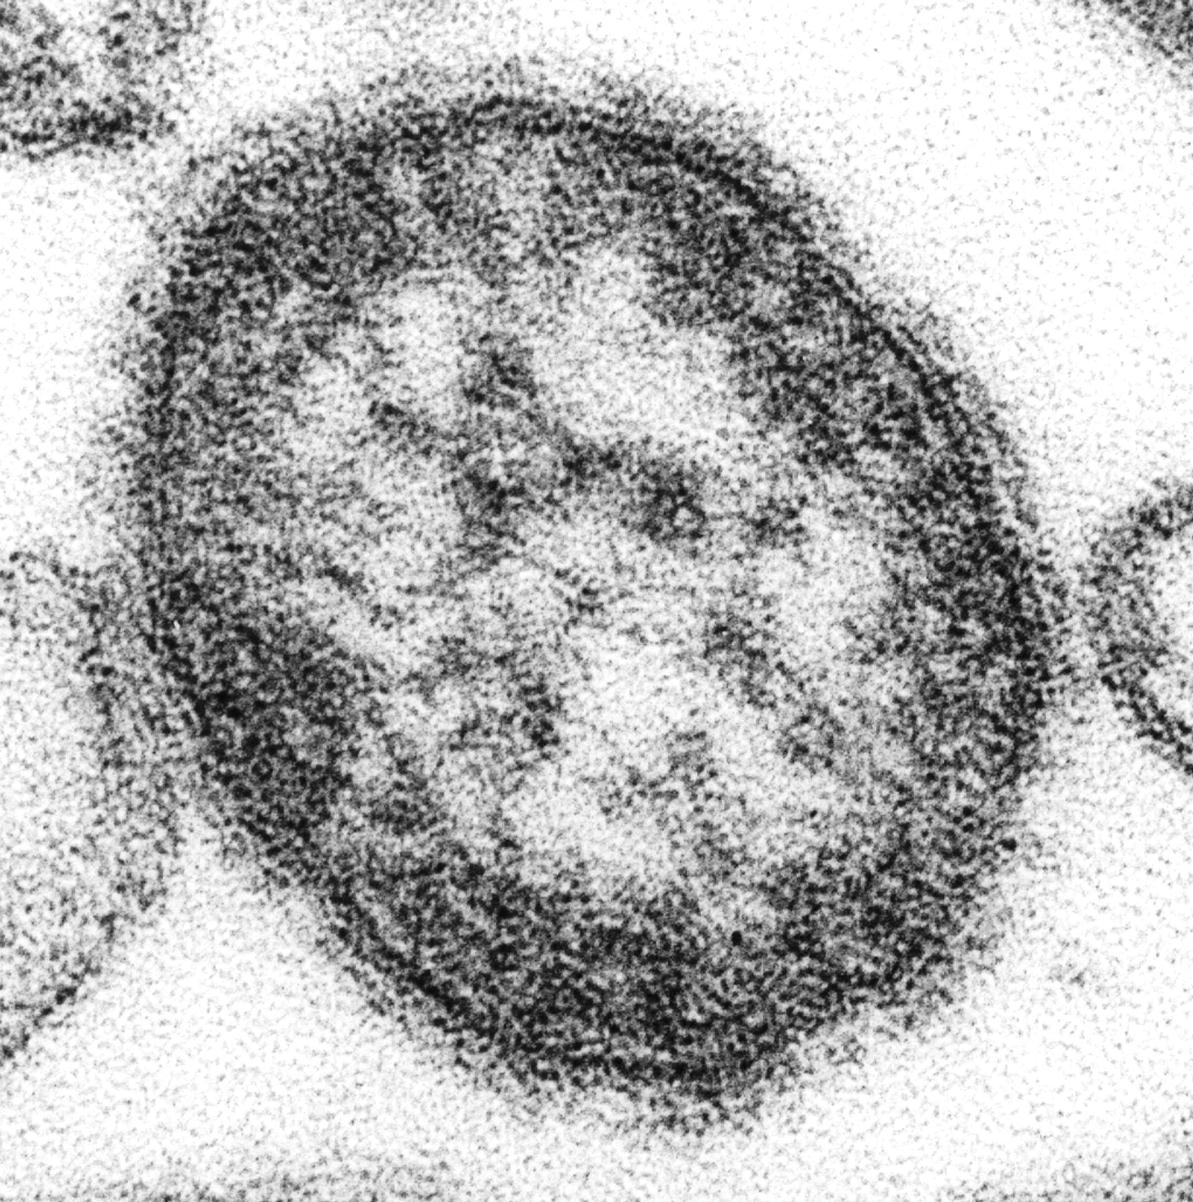 El sarampión es causado por un virus